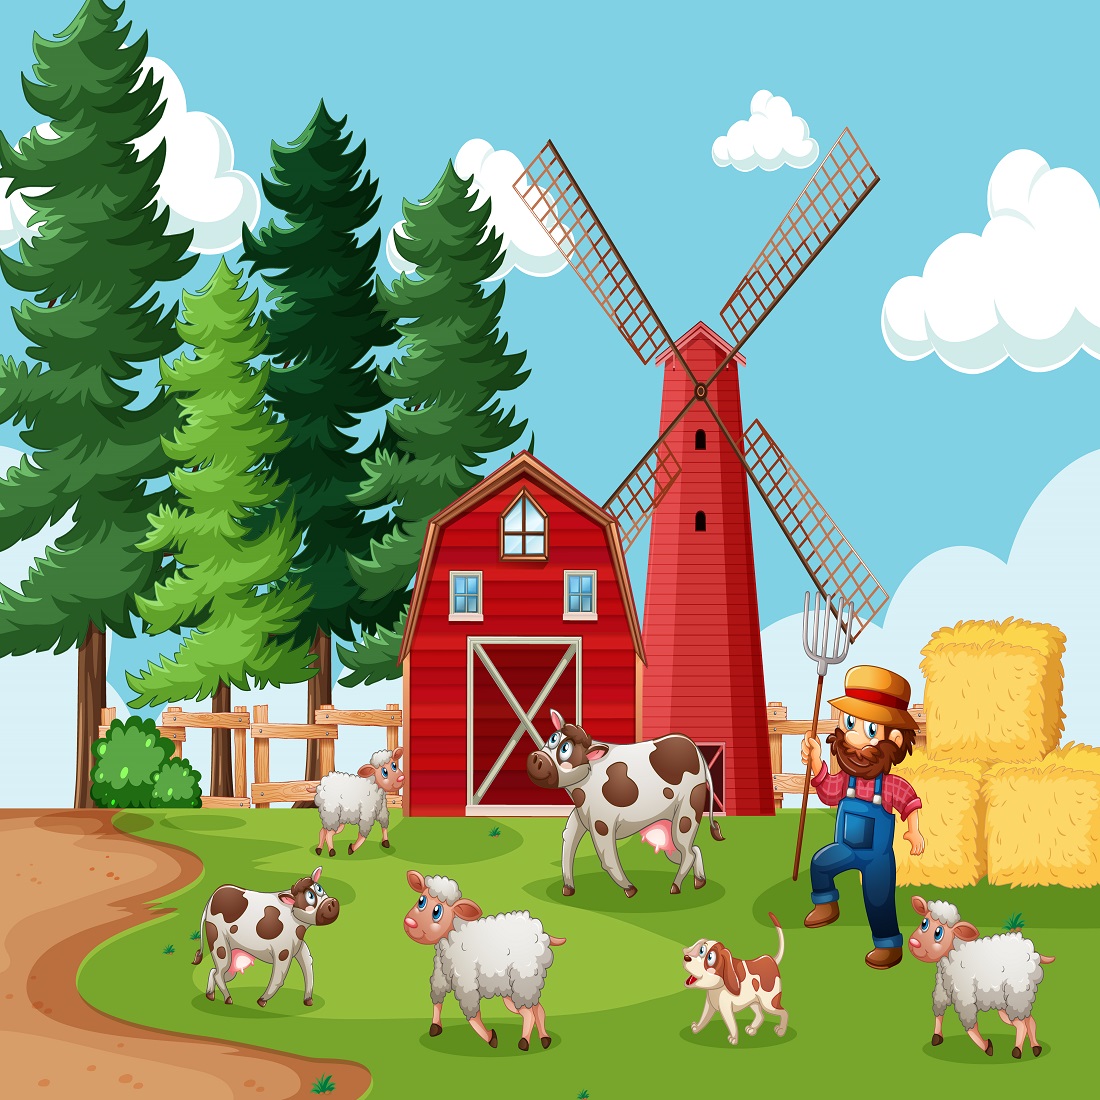 Farmer with animal farm farm scene cartoon style preview image.